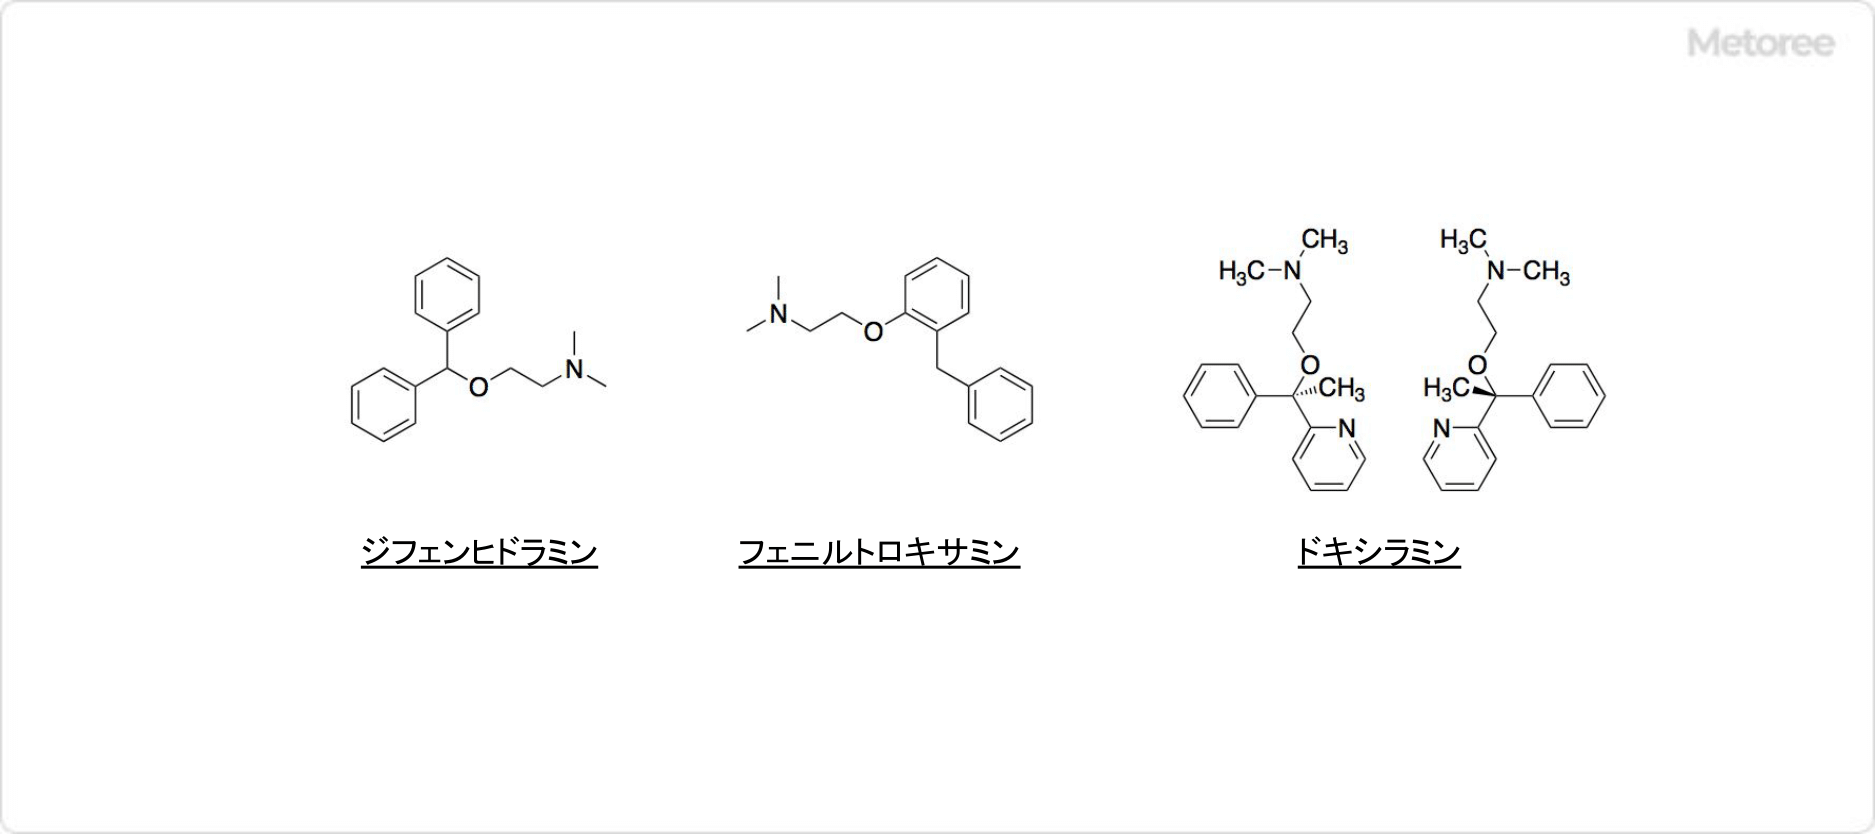 エタノールアミンの部分構造を有する化合物